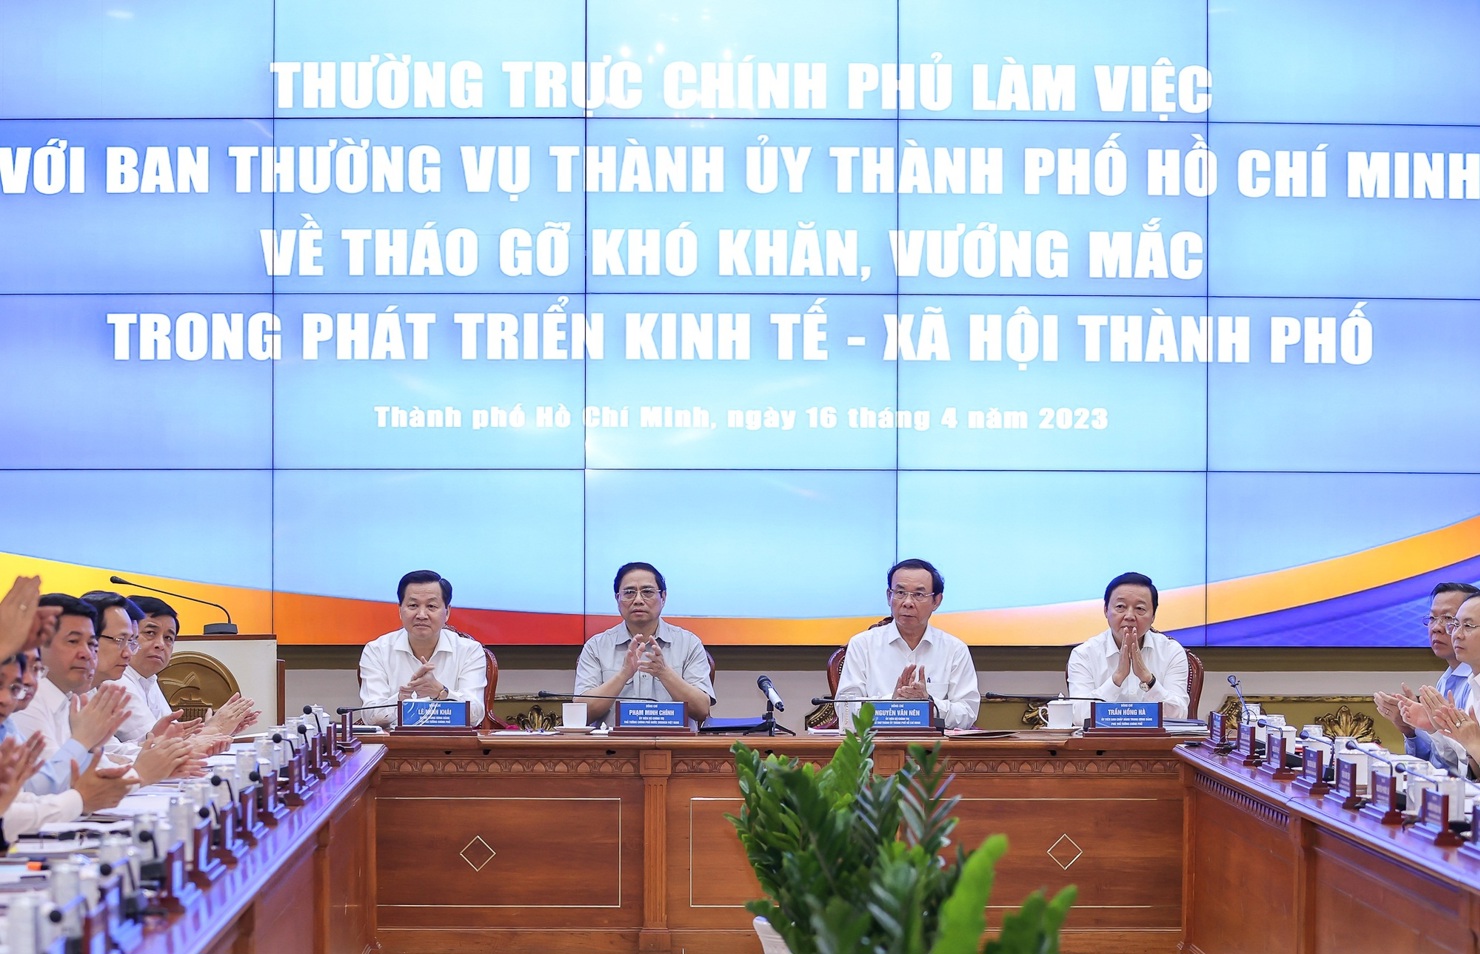 Toàn cảnh cuộc làm việc giữa Thường trực Chính phủ với Ban Thường vụ Thành ủy TP. Hồ Chí Minh sáng 16/4.